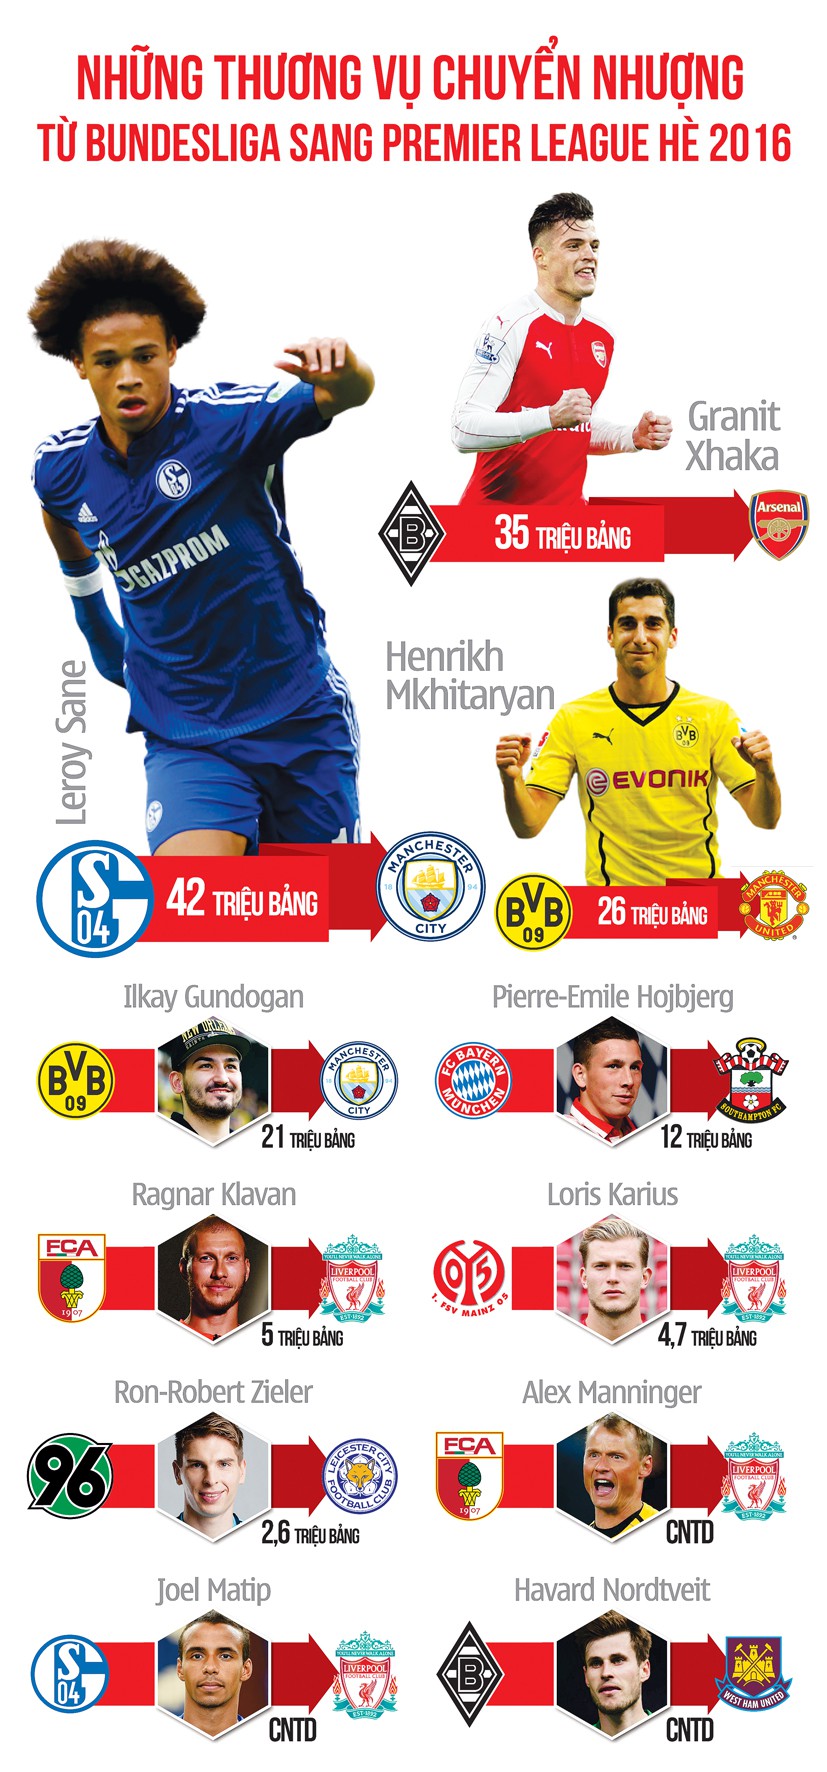 Bundesliga đang làm giàu nhờ premier league